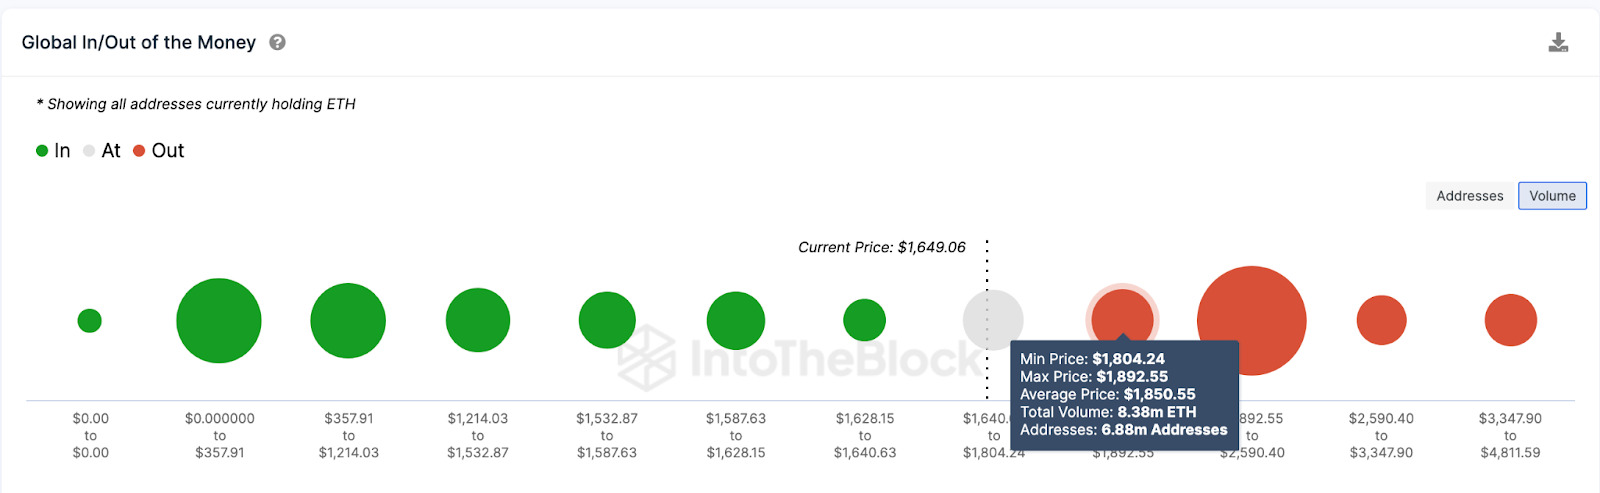 Трейдеры Ethereum поставили 450 миллионов долларов, поскольку аналитик Bloomberg намекает на одобрение ETF – может ли цена ETH вернуть 2500 долларов?